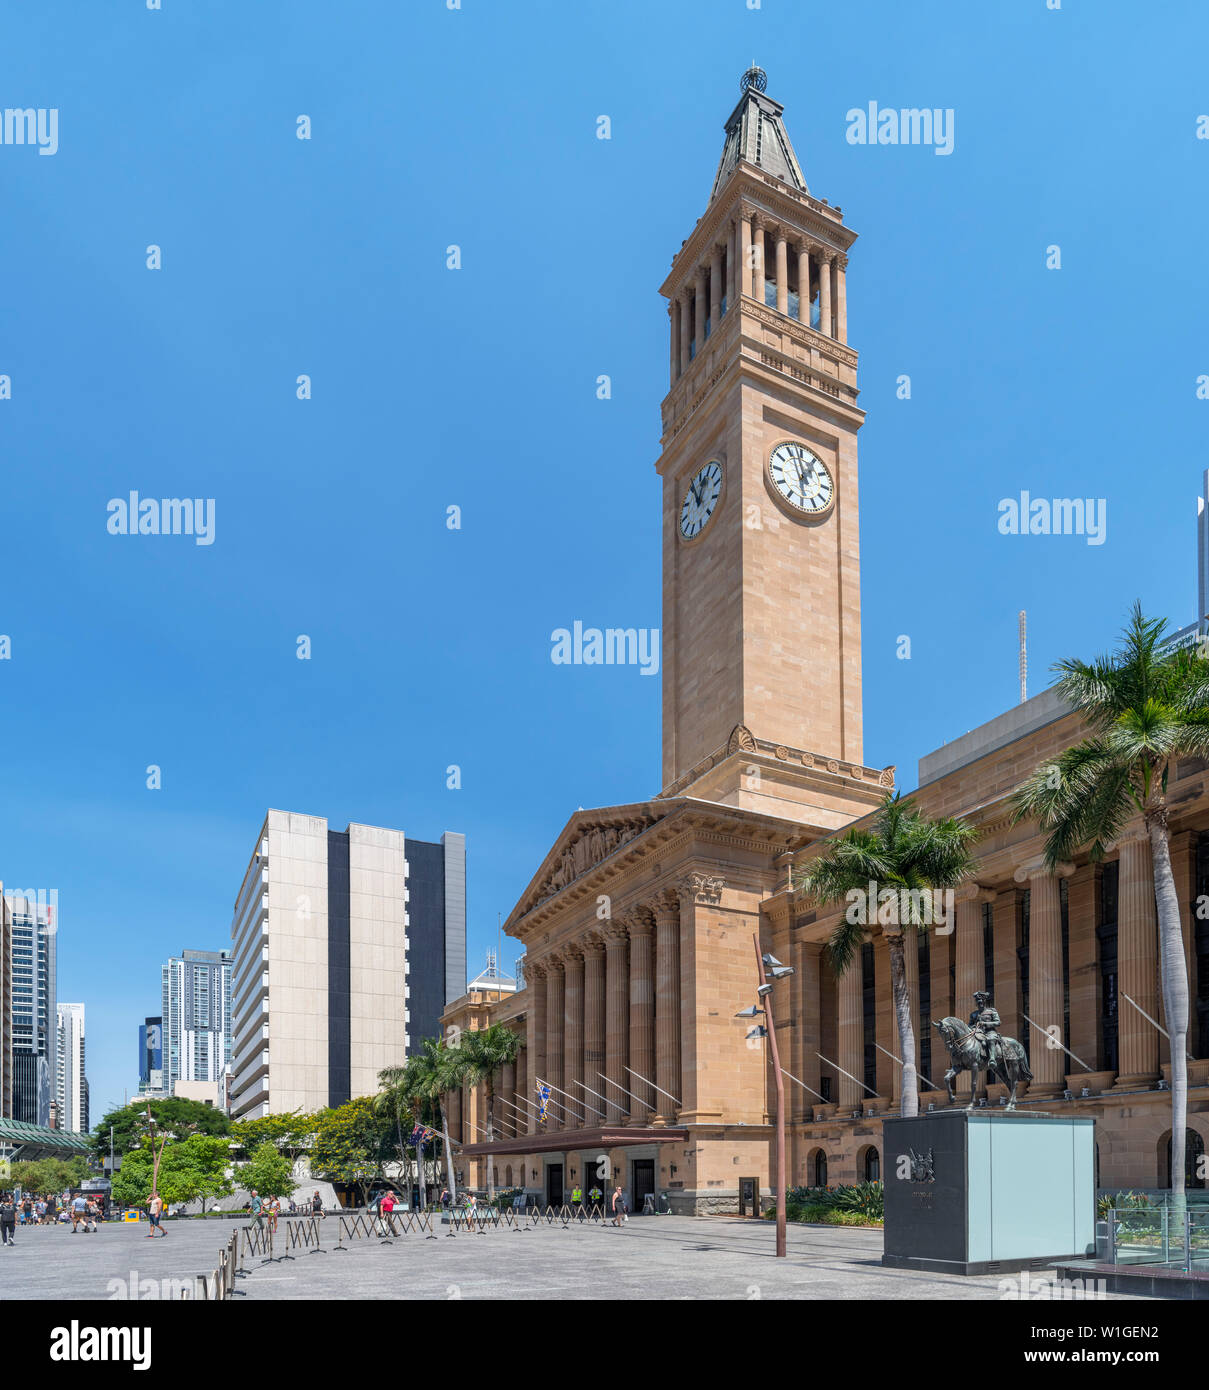 L'Hôtel de ville de Brisbane, King George Square, Brisbane, Queensland, Australie Banque D'Images